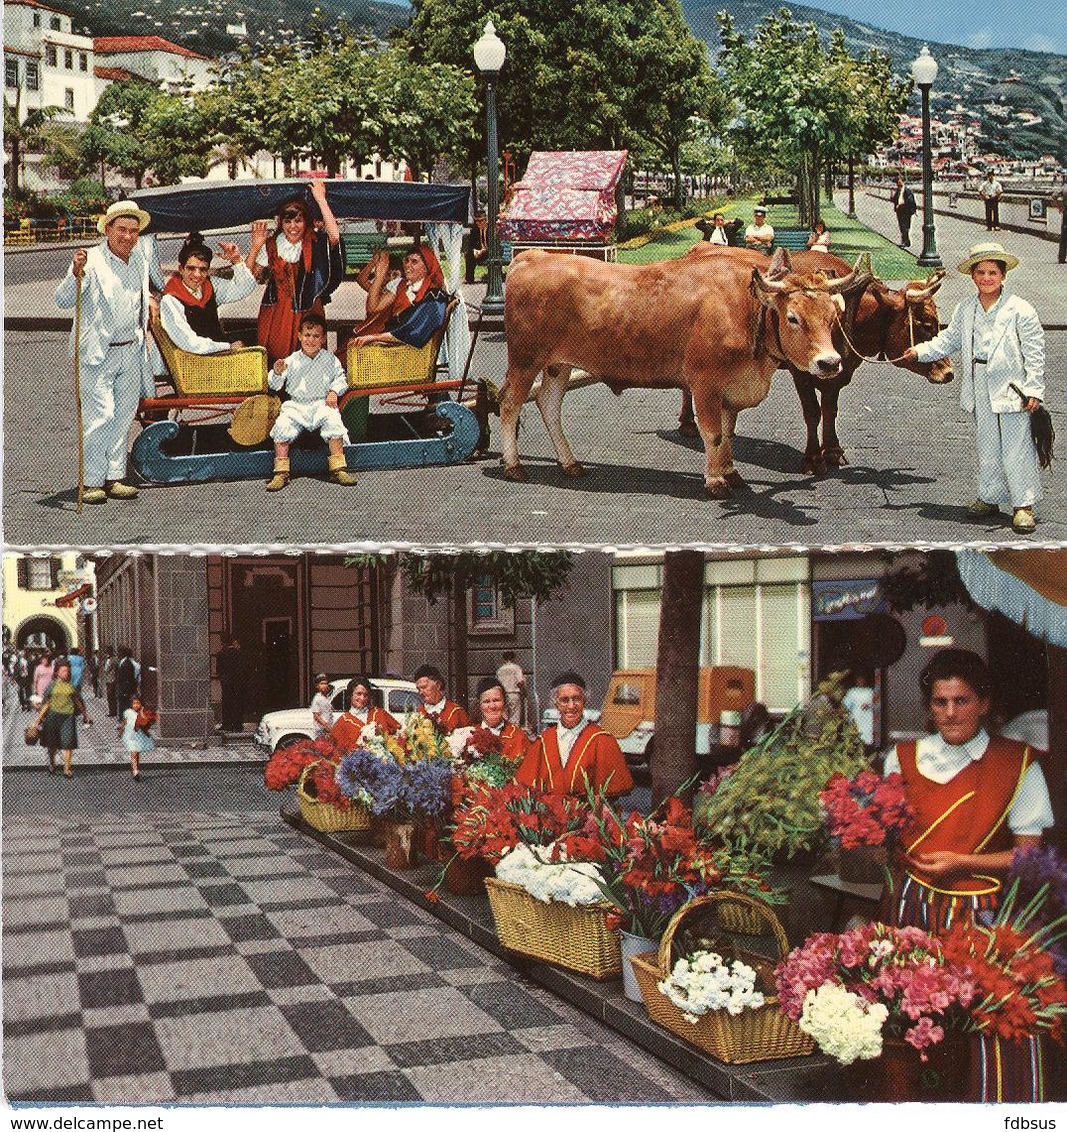 Funchal Madeira - 6 Different Cards - 6 Verschillende Kaarten - 6 Cartes Differents - Madeira